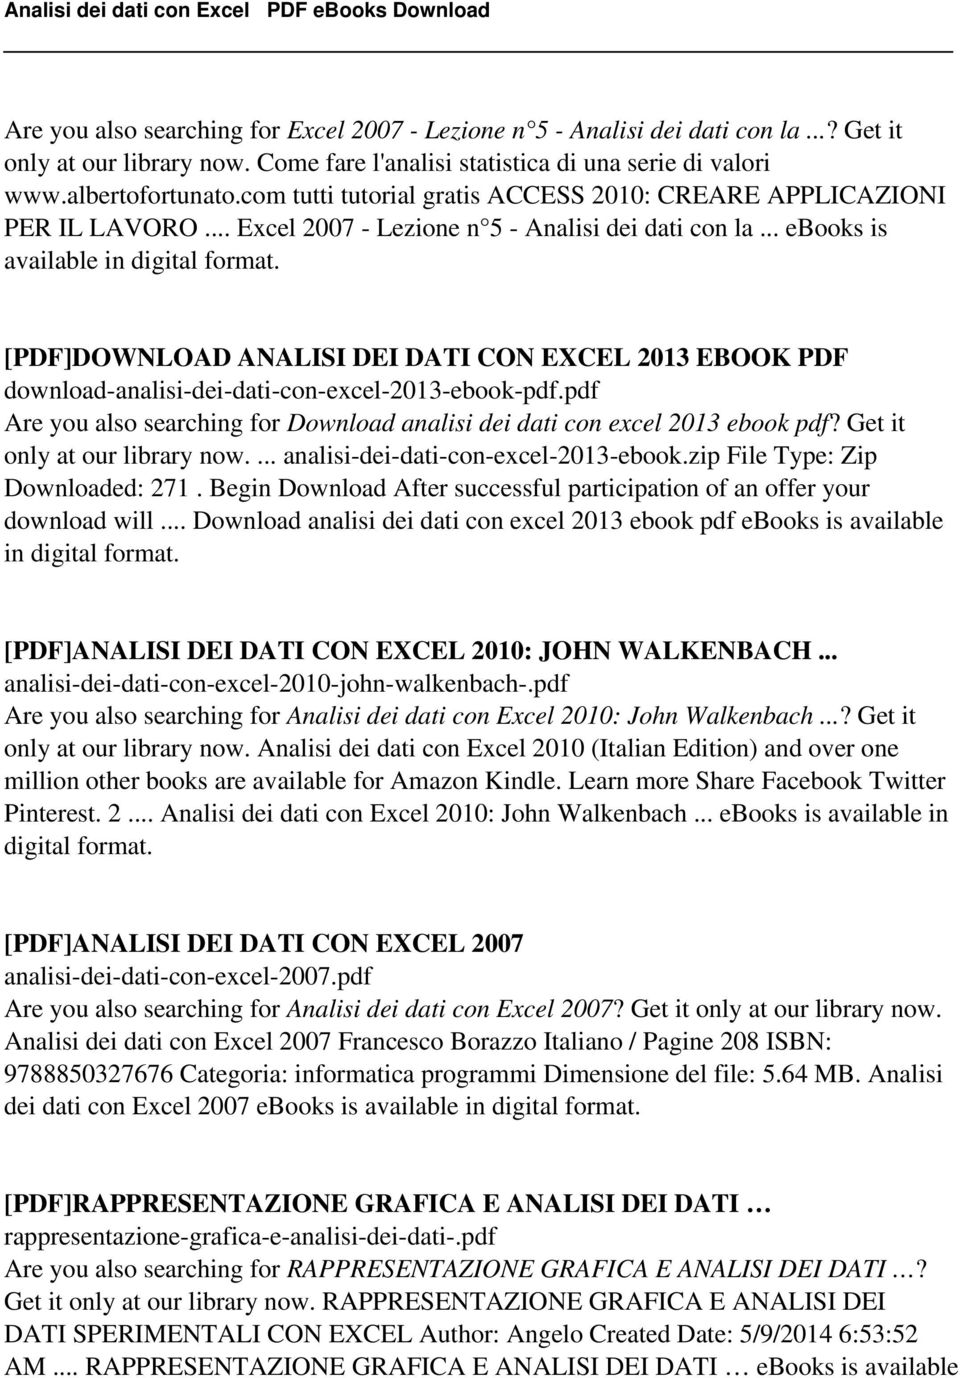 .. ebooks is [PDF]DOWNLOAD ANALISI DEI DATI CON EXCEL 2013 EBOOK PDF download-analisi-dei-dati-con-excel-2013-ebook-pdf.